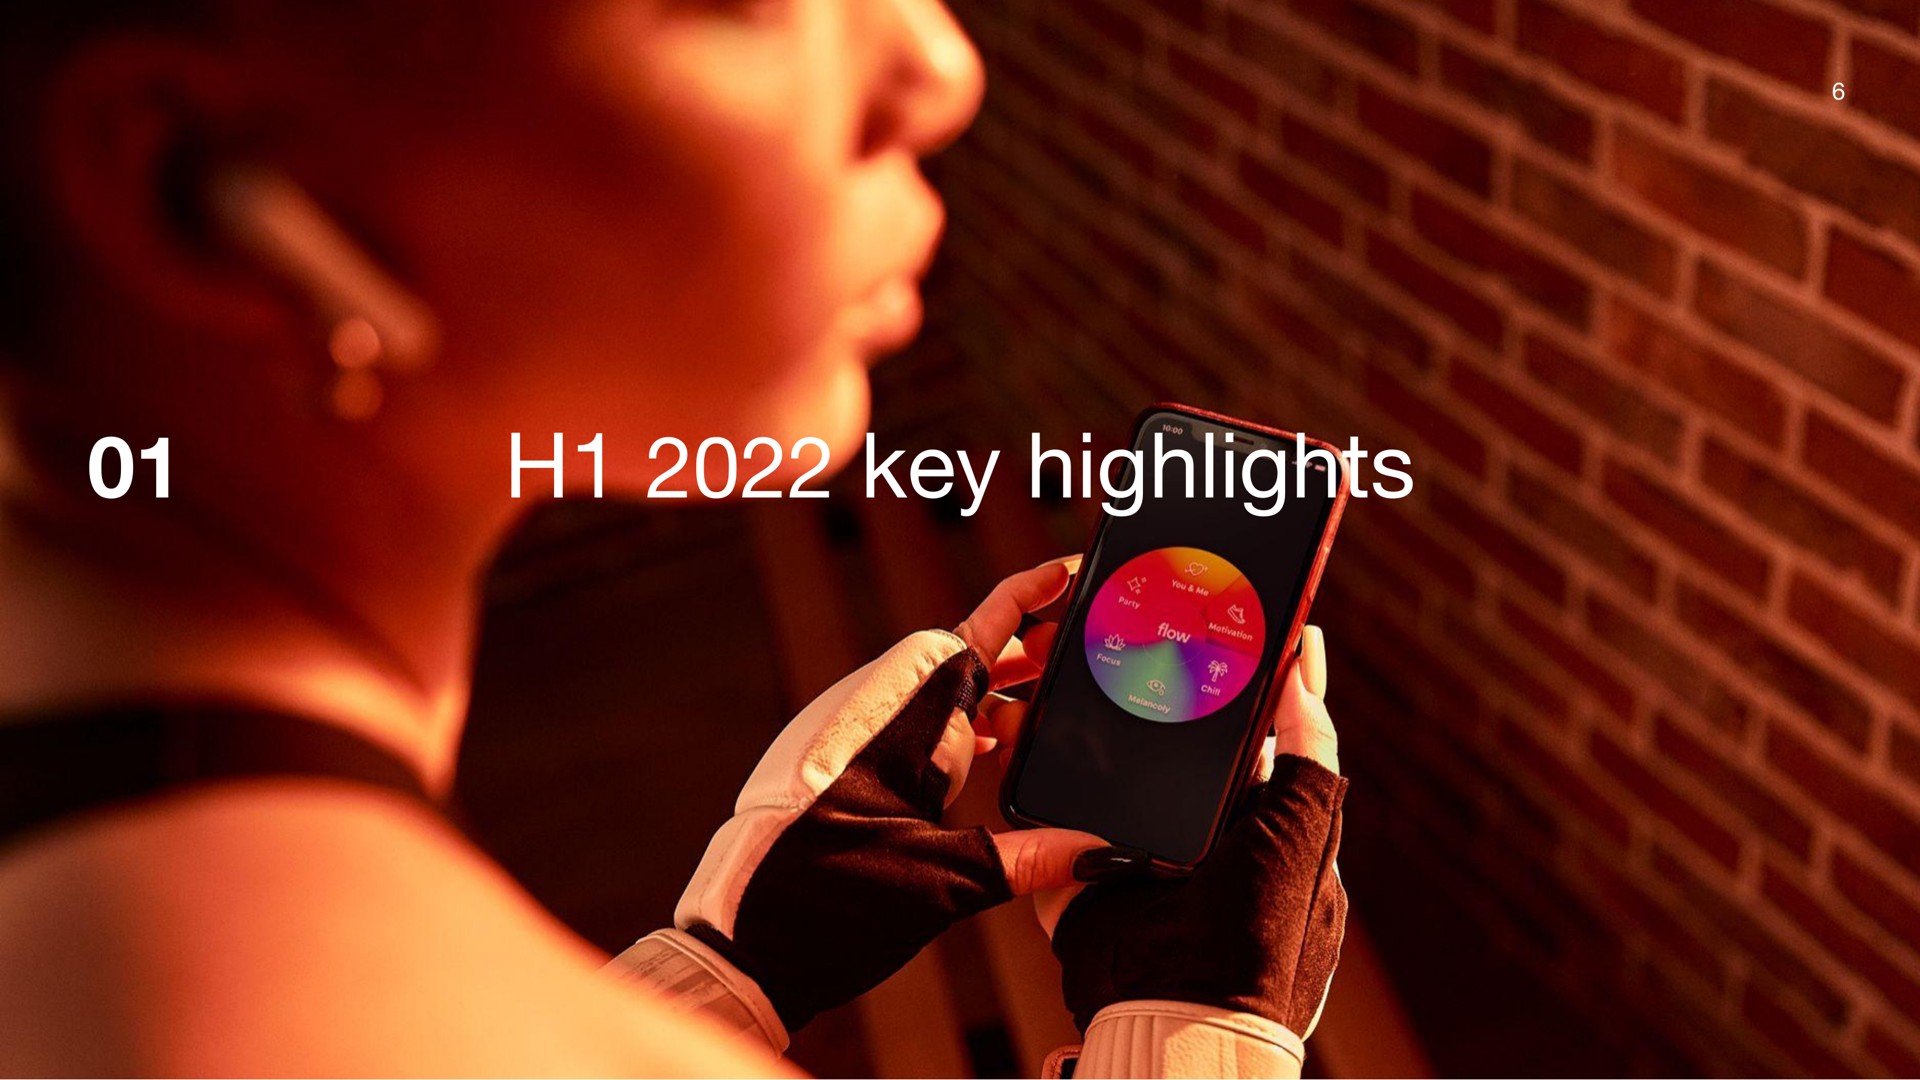 key highlights | Deezer